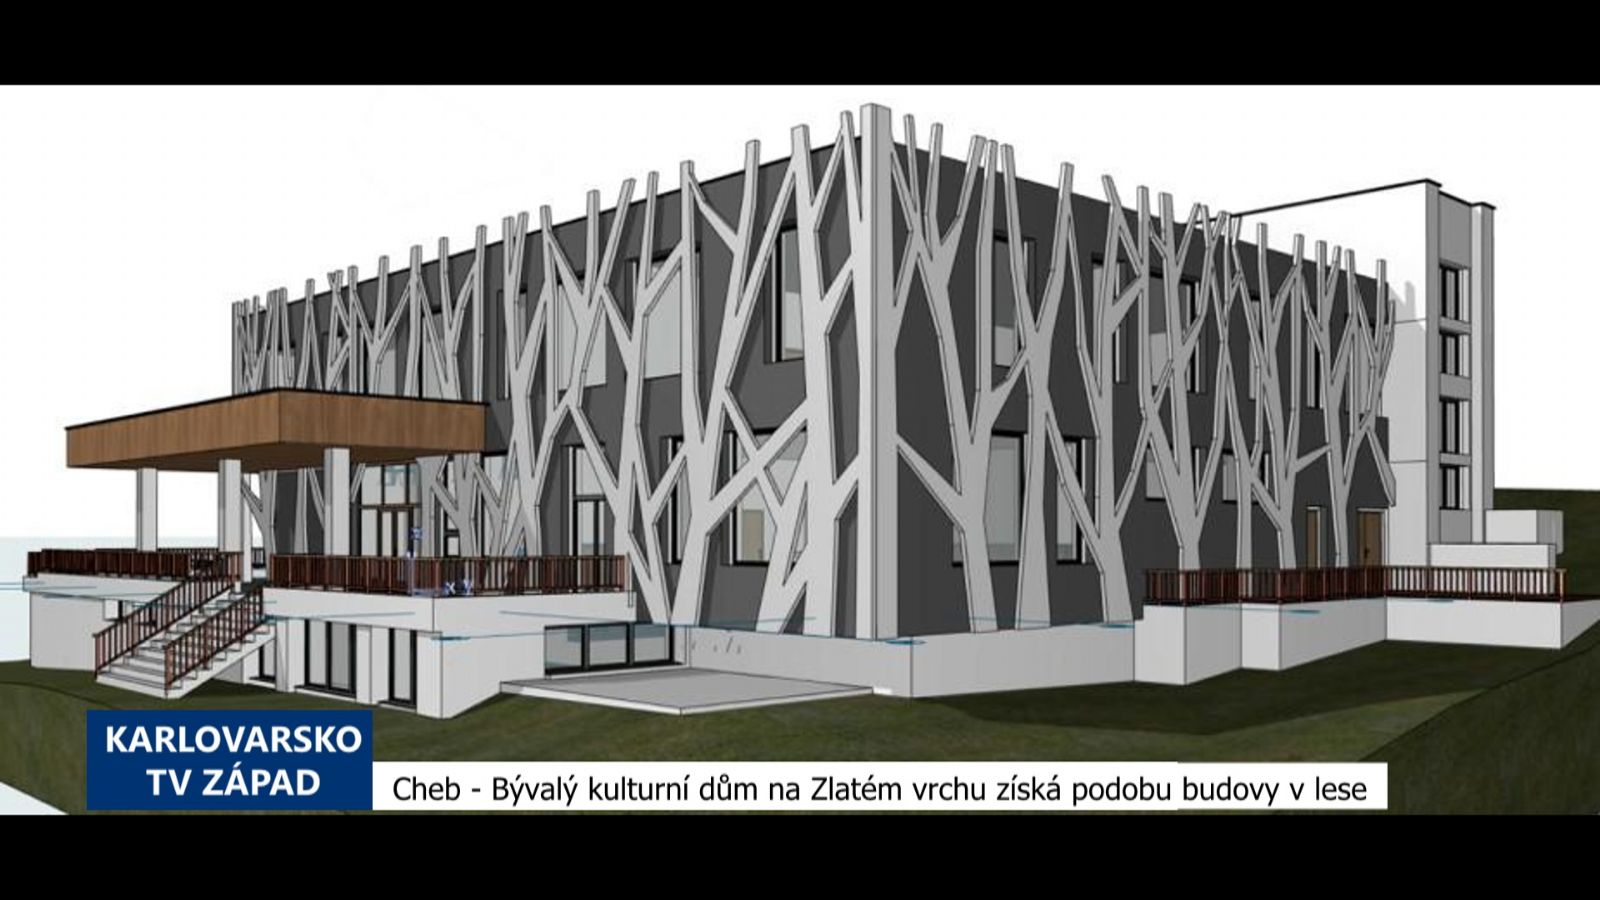 Cheb: Bývalý kulturní dům na Zlatém Vrchu získá podobu budovy v lese (TV Západ)